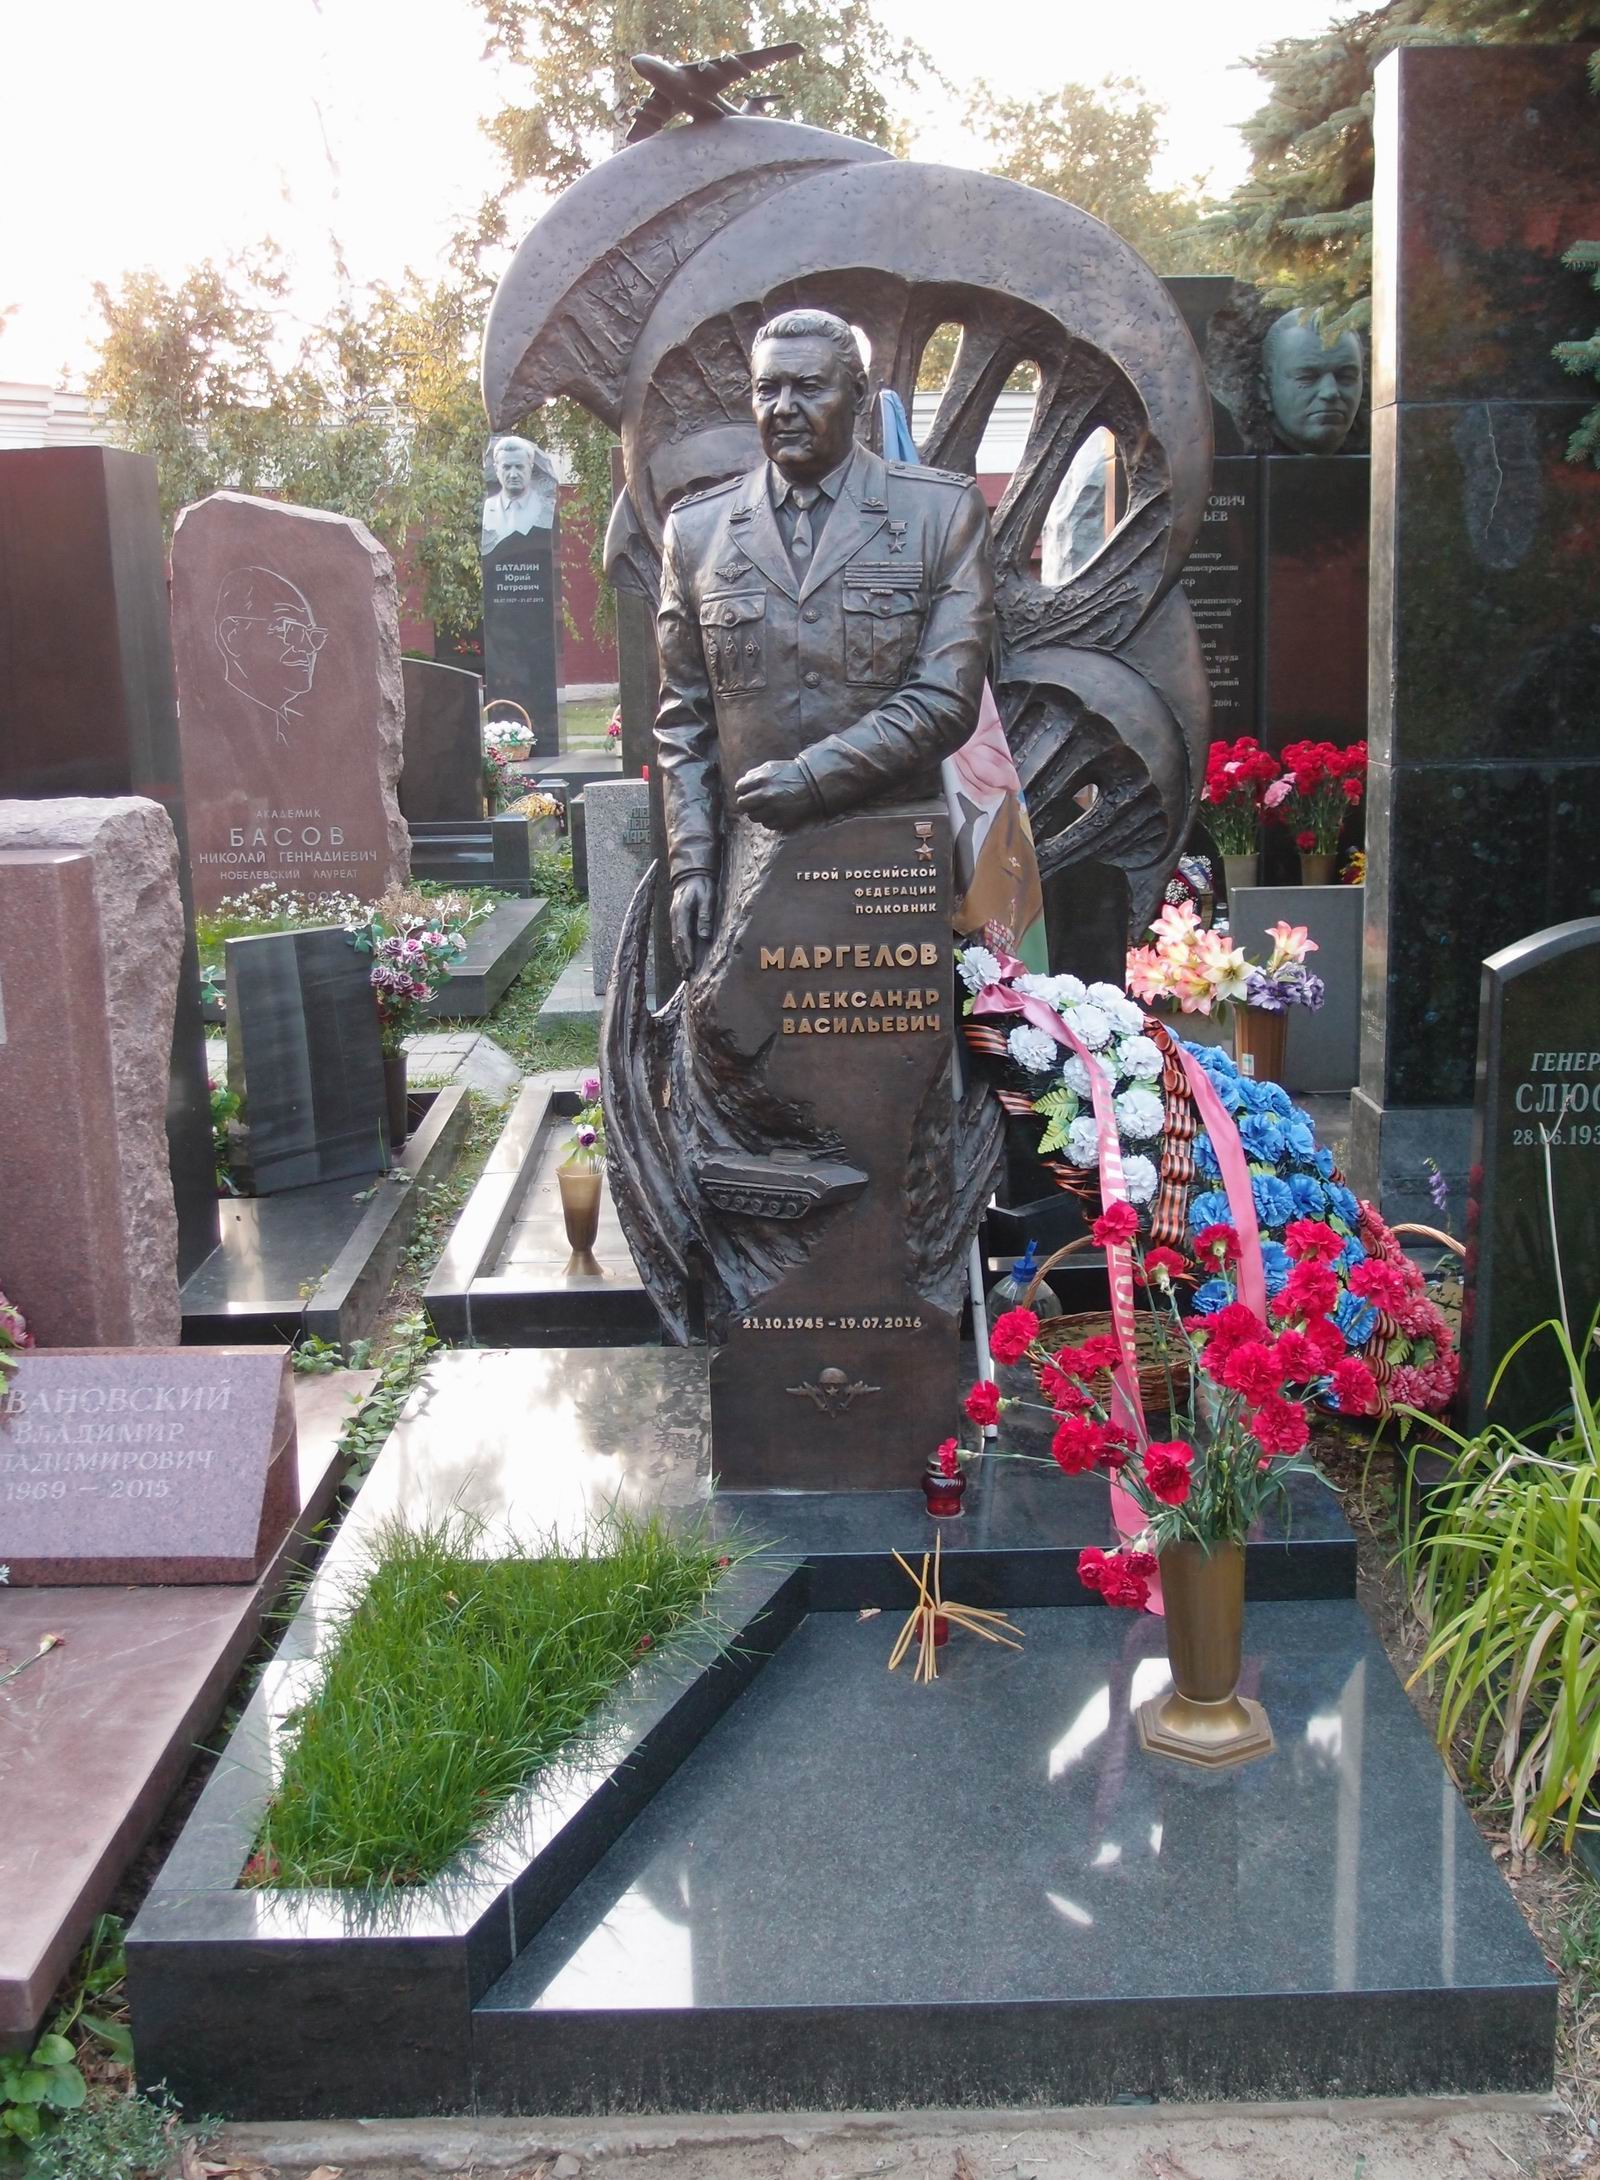 Памятник на могиле Маргелов А.В. (1945–2016), на Новодевичьем кладбище (11–3–2). Нажмите левую кнопку мыши чтобы увидеть фрагмент памятника.